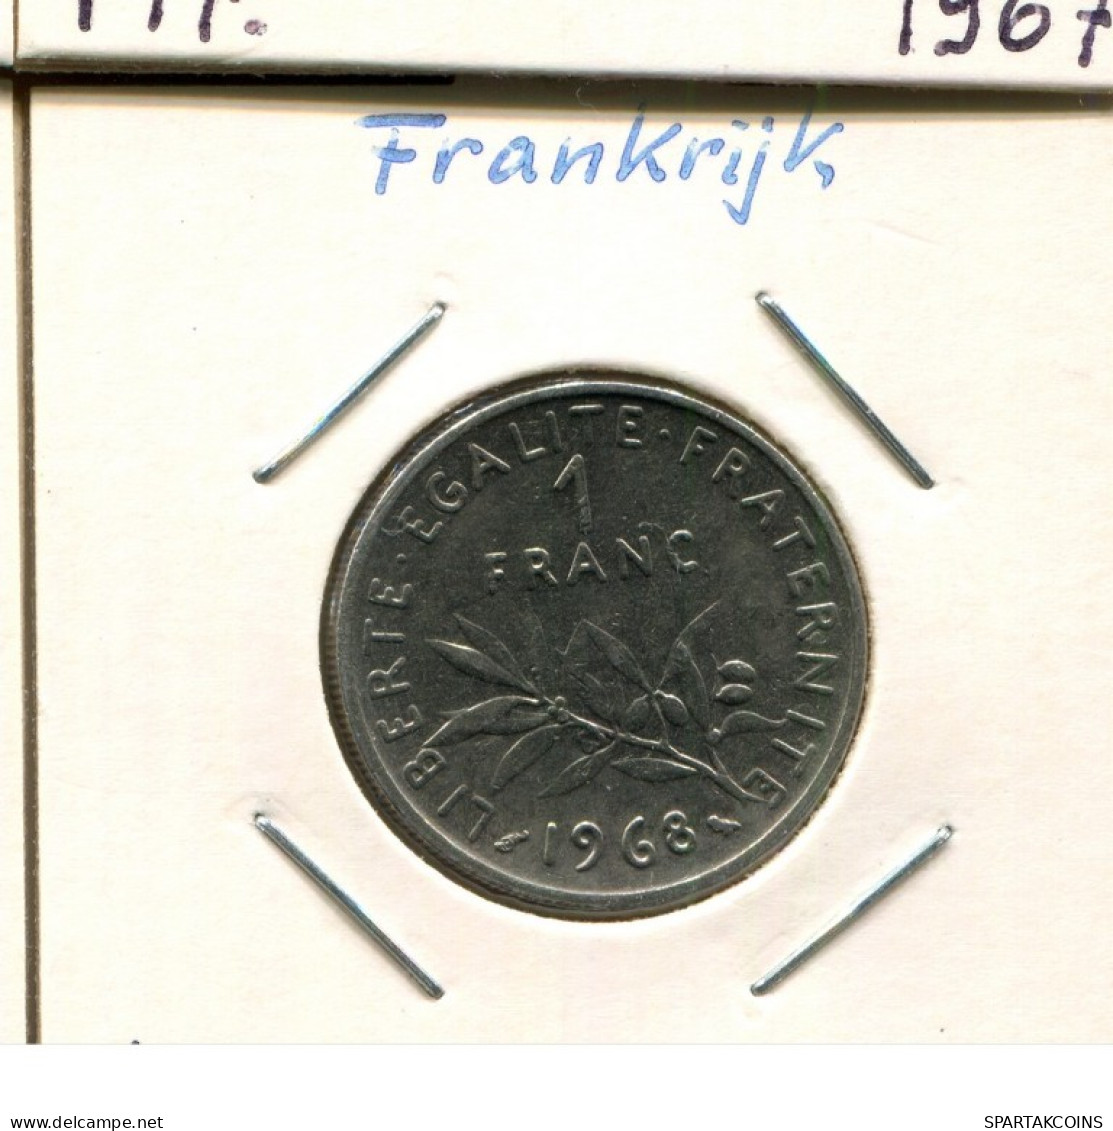 1 FRANC 1968 FRANKREICH FRANCE Französisch Münze #AM311.D.A - 1 Franc